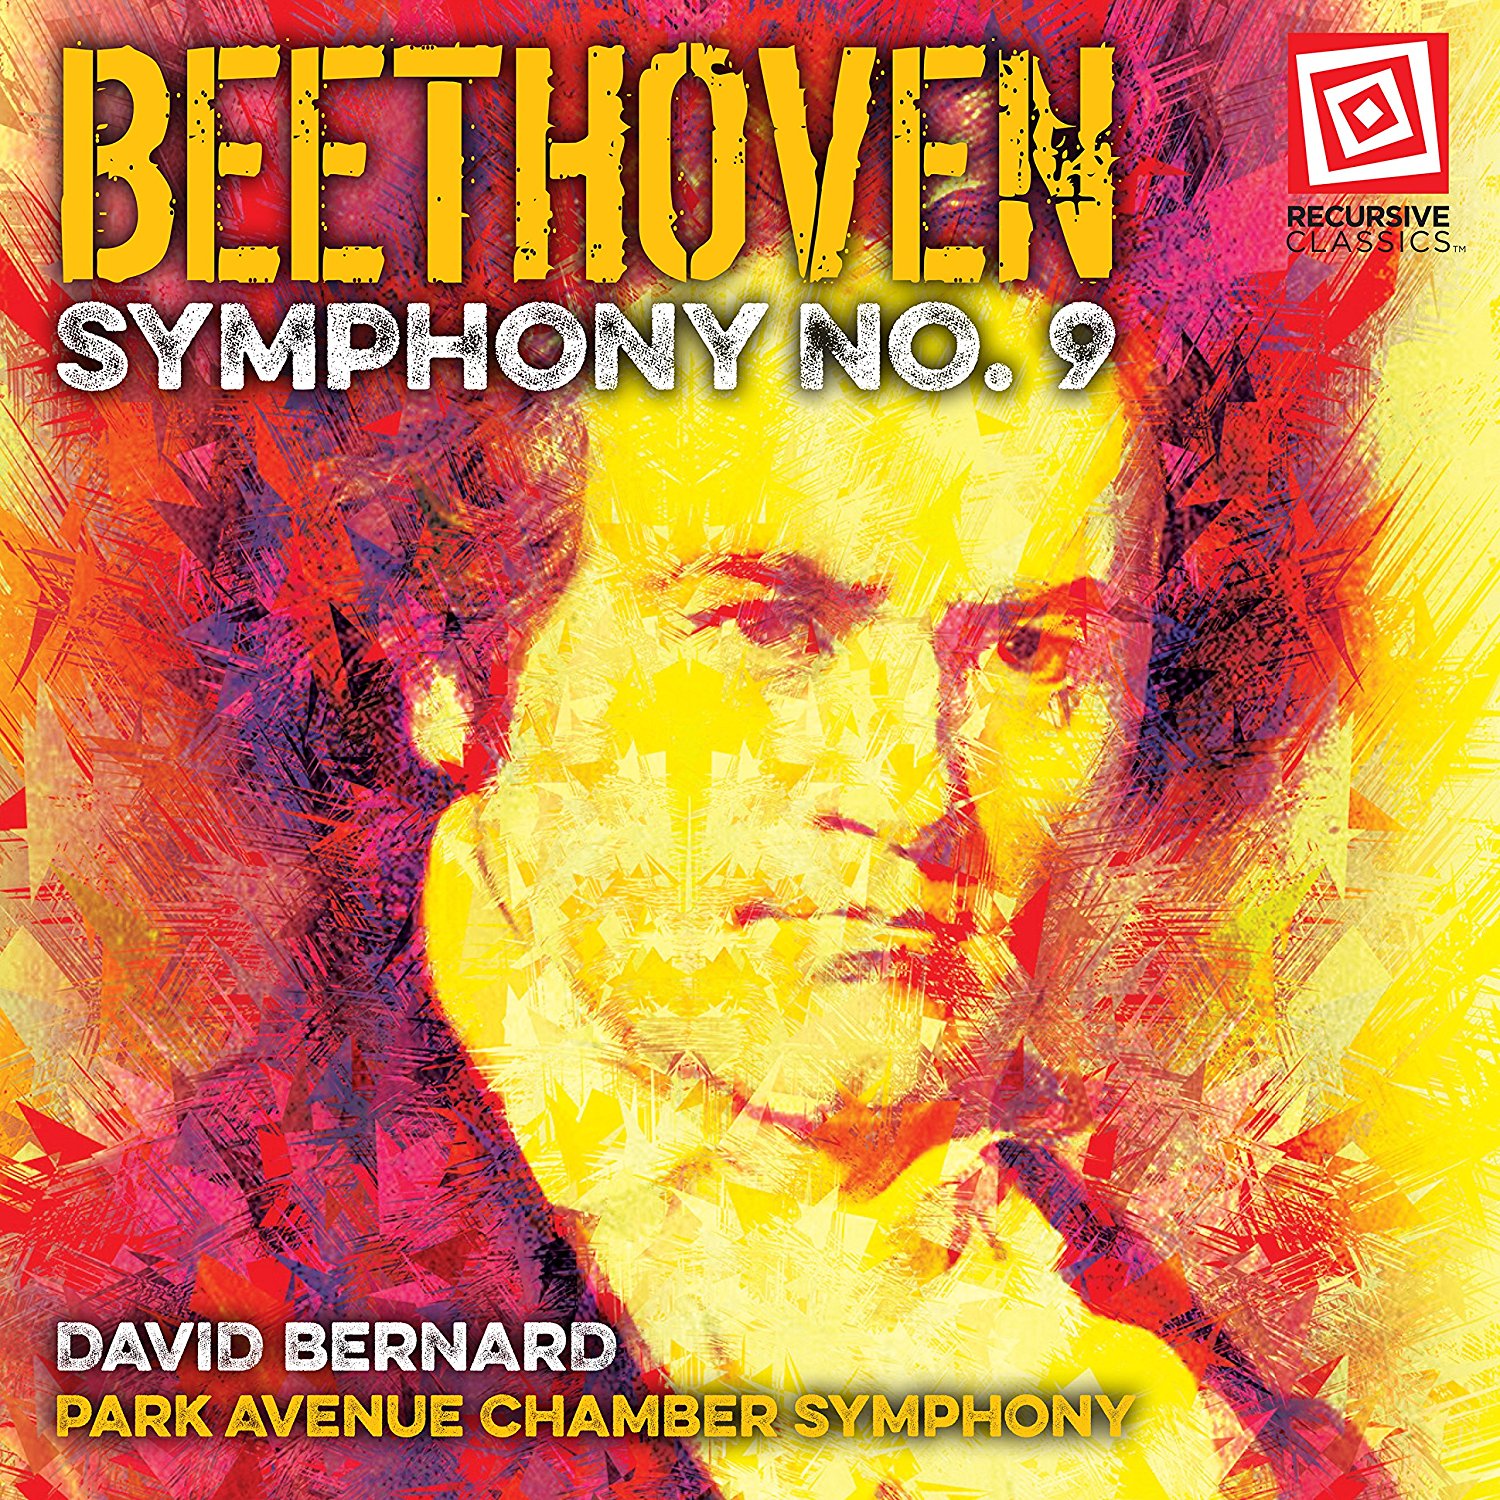 Bernard's Beethoven